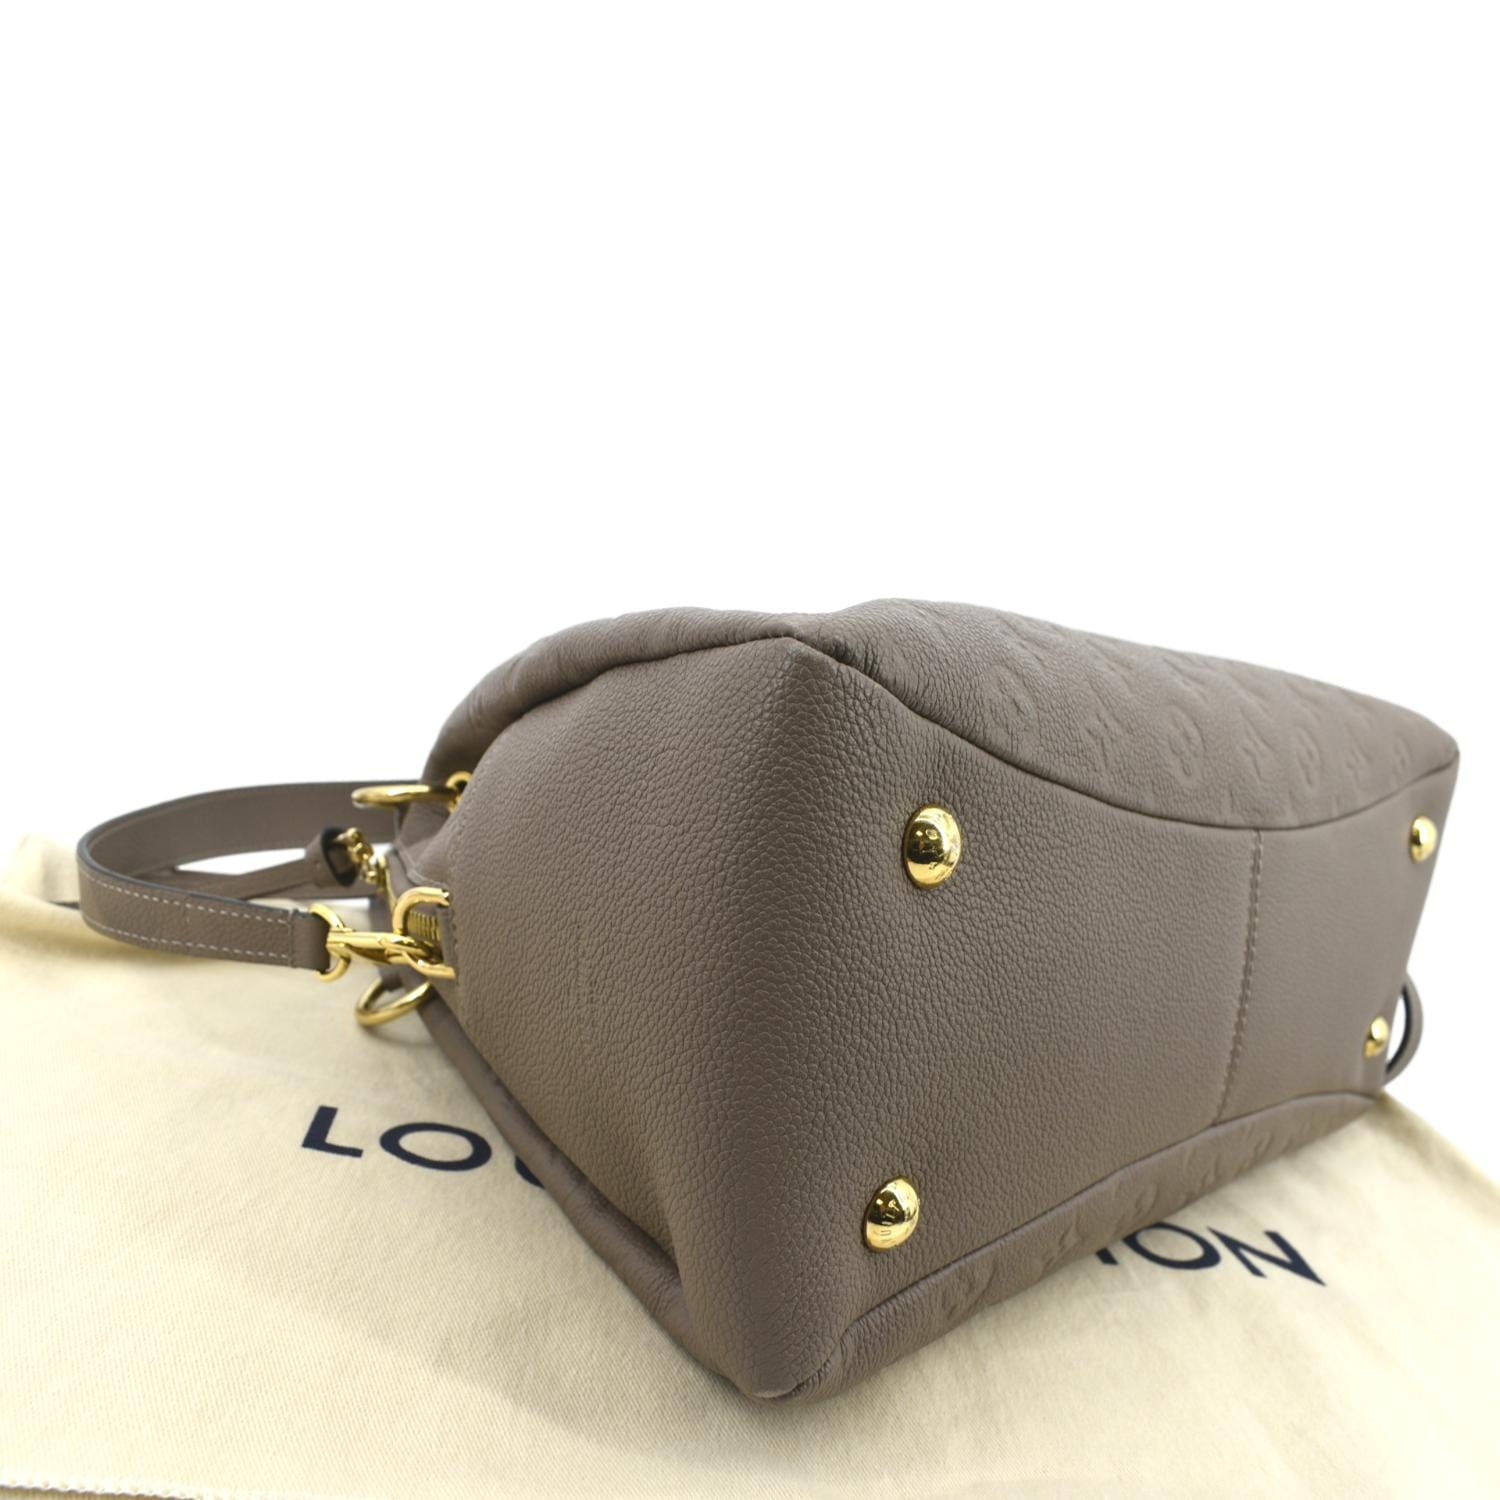 Only 878.00 usd for LOUIS VUITTON Ponthieu PM Empreinte Leather Shoulder  Bag Tourterelle Online at the Shop